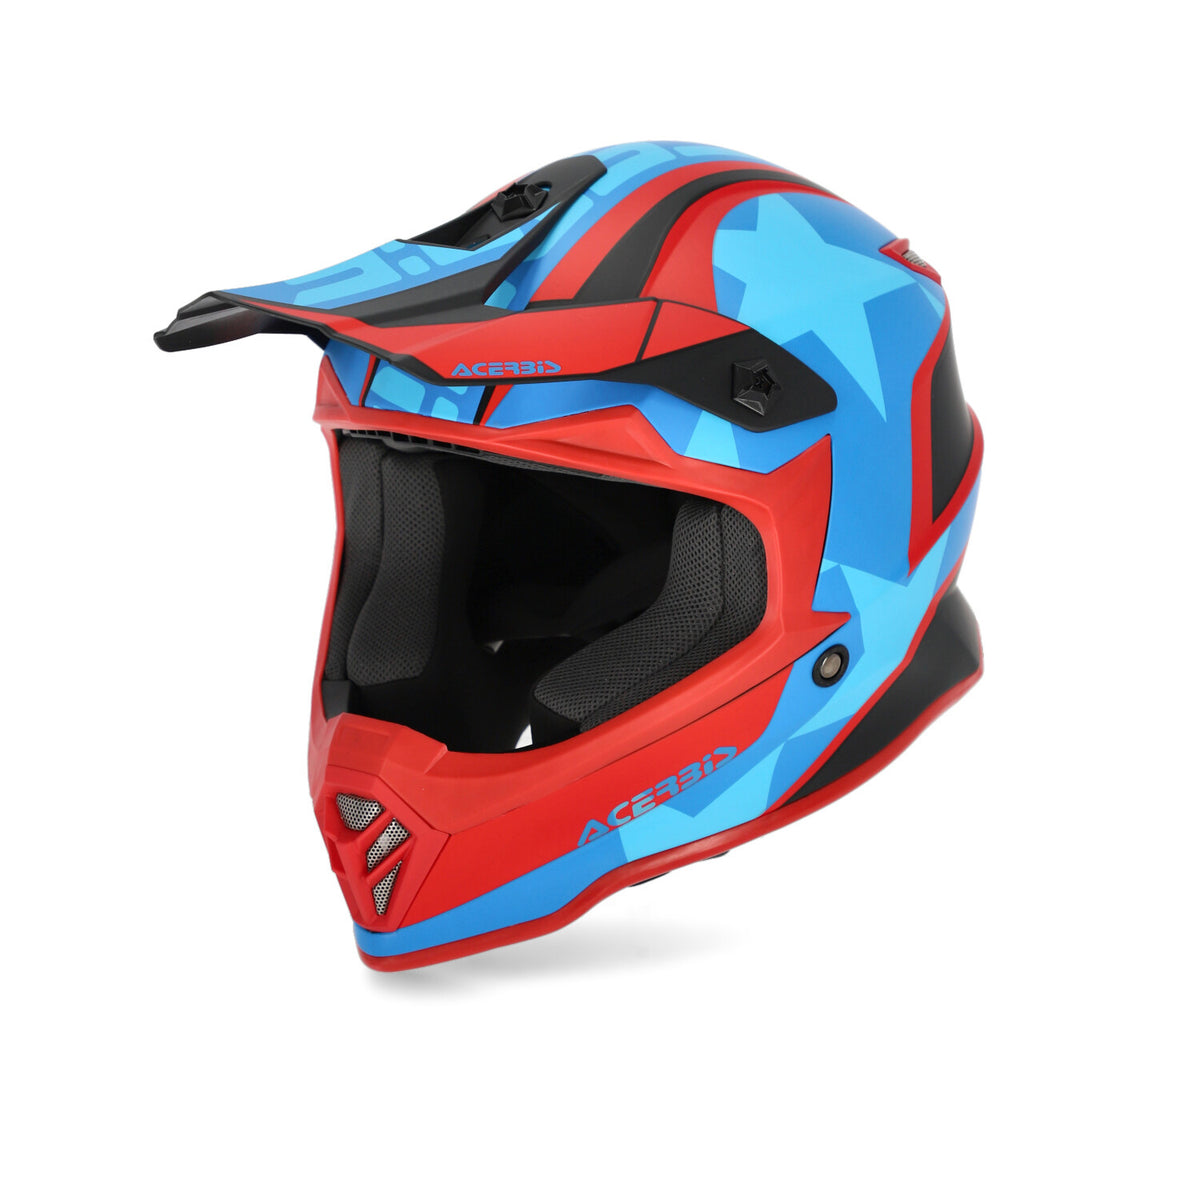 Acerbis STEEL KID Cross / Enduro Helmet Red/Blue/Black 